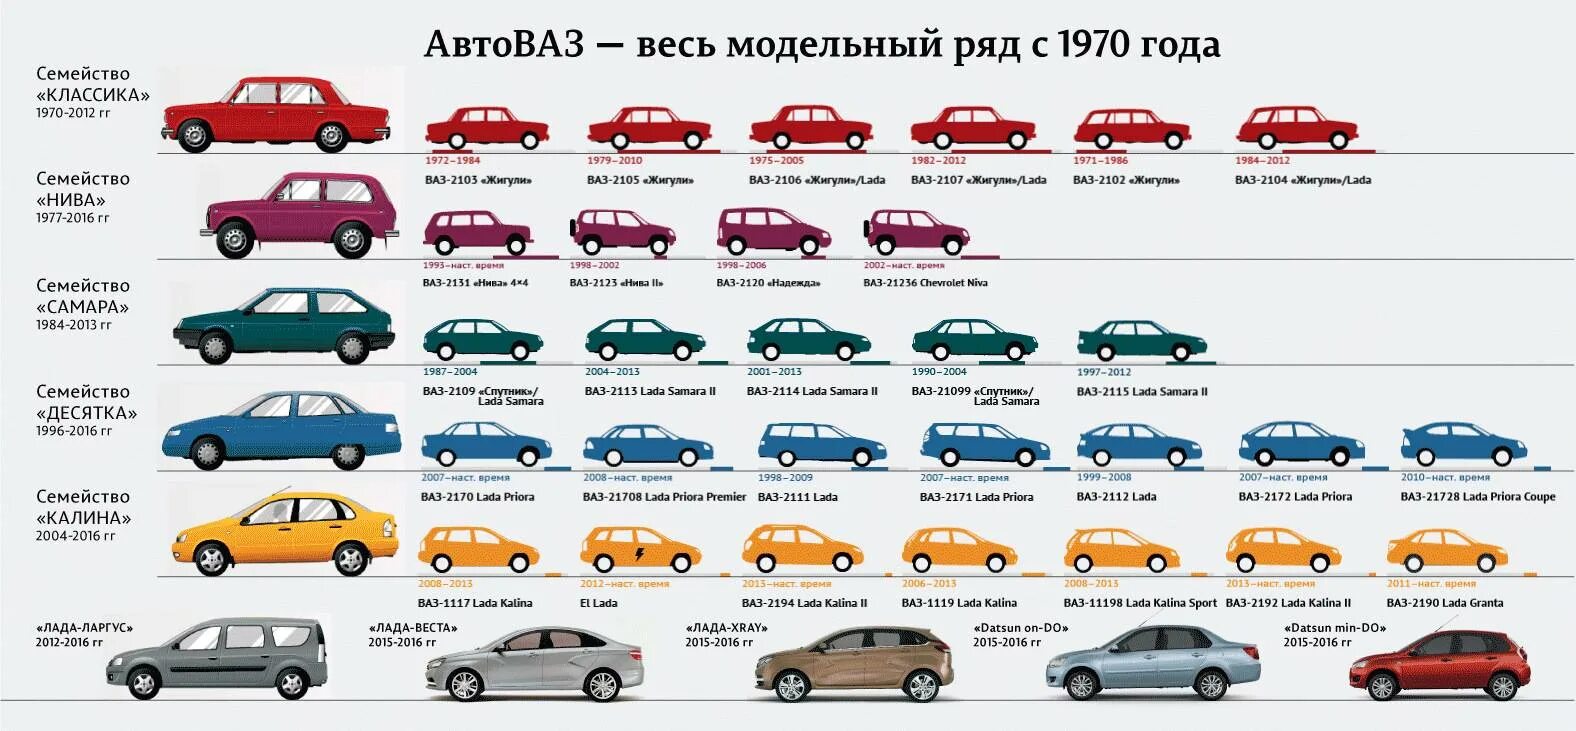 1 38 19 5. ВАЗ линейка моделей. Хронология автомобилей ВАЗ по годам. Модельный ряд ВАЗ 2101-2115.